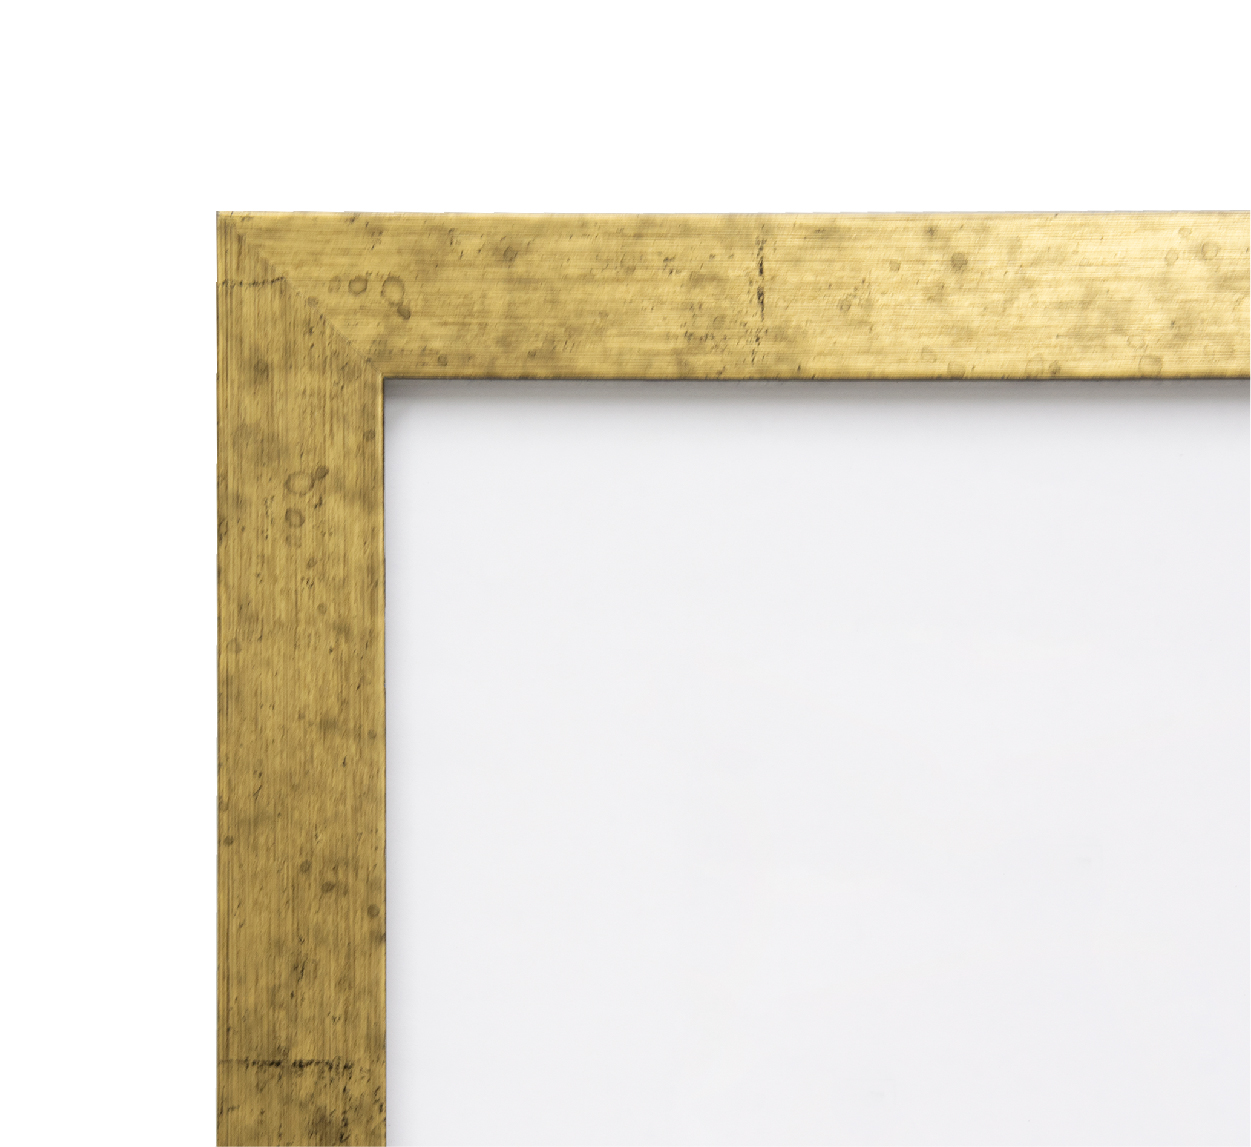 デッサン用額縁 木製フレーム 5698 半切サイズ 金柄紋 ゴールド